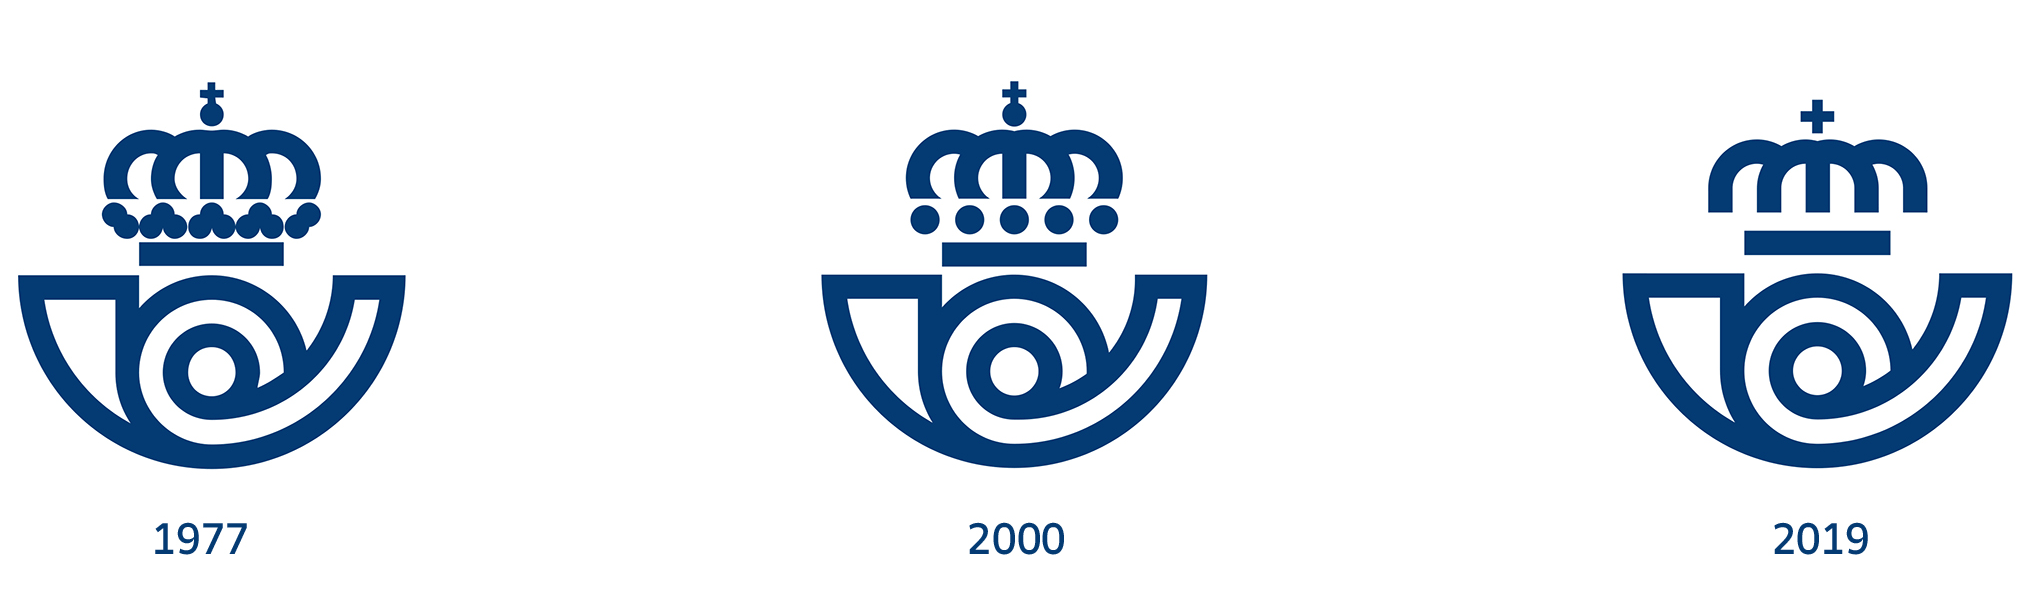 Summa Logo - Brand New: New Logo and Identity for Correos by Summa